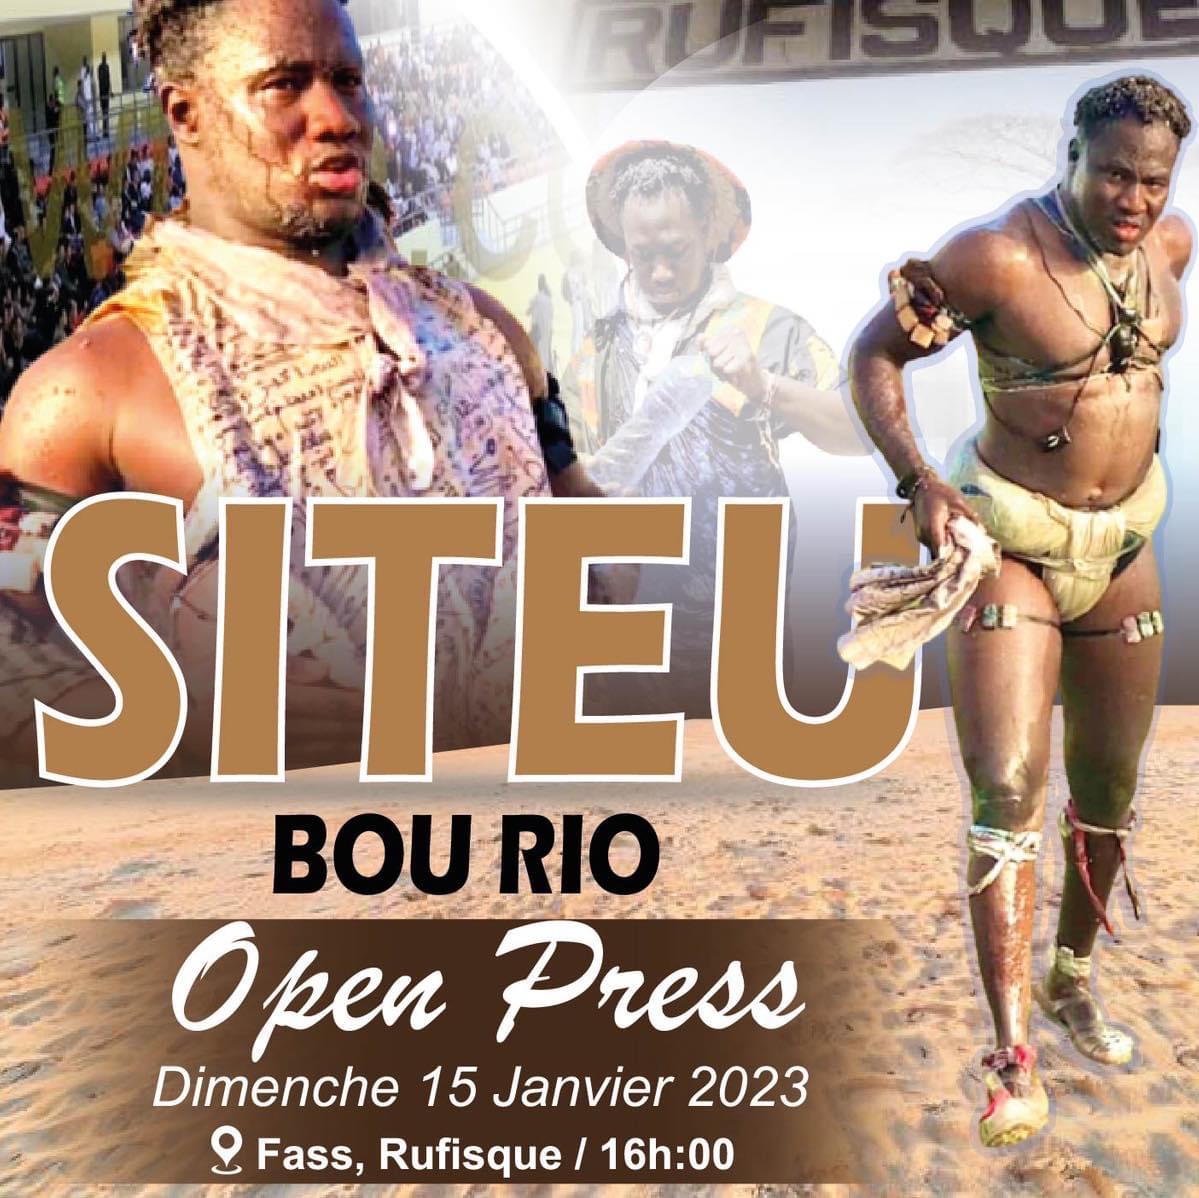 Open presse de Siteu bou Rio a Fass Rufisque, dimanche 15 janvier